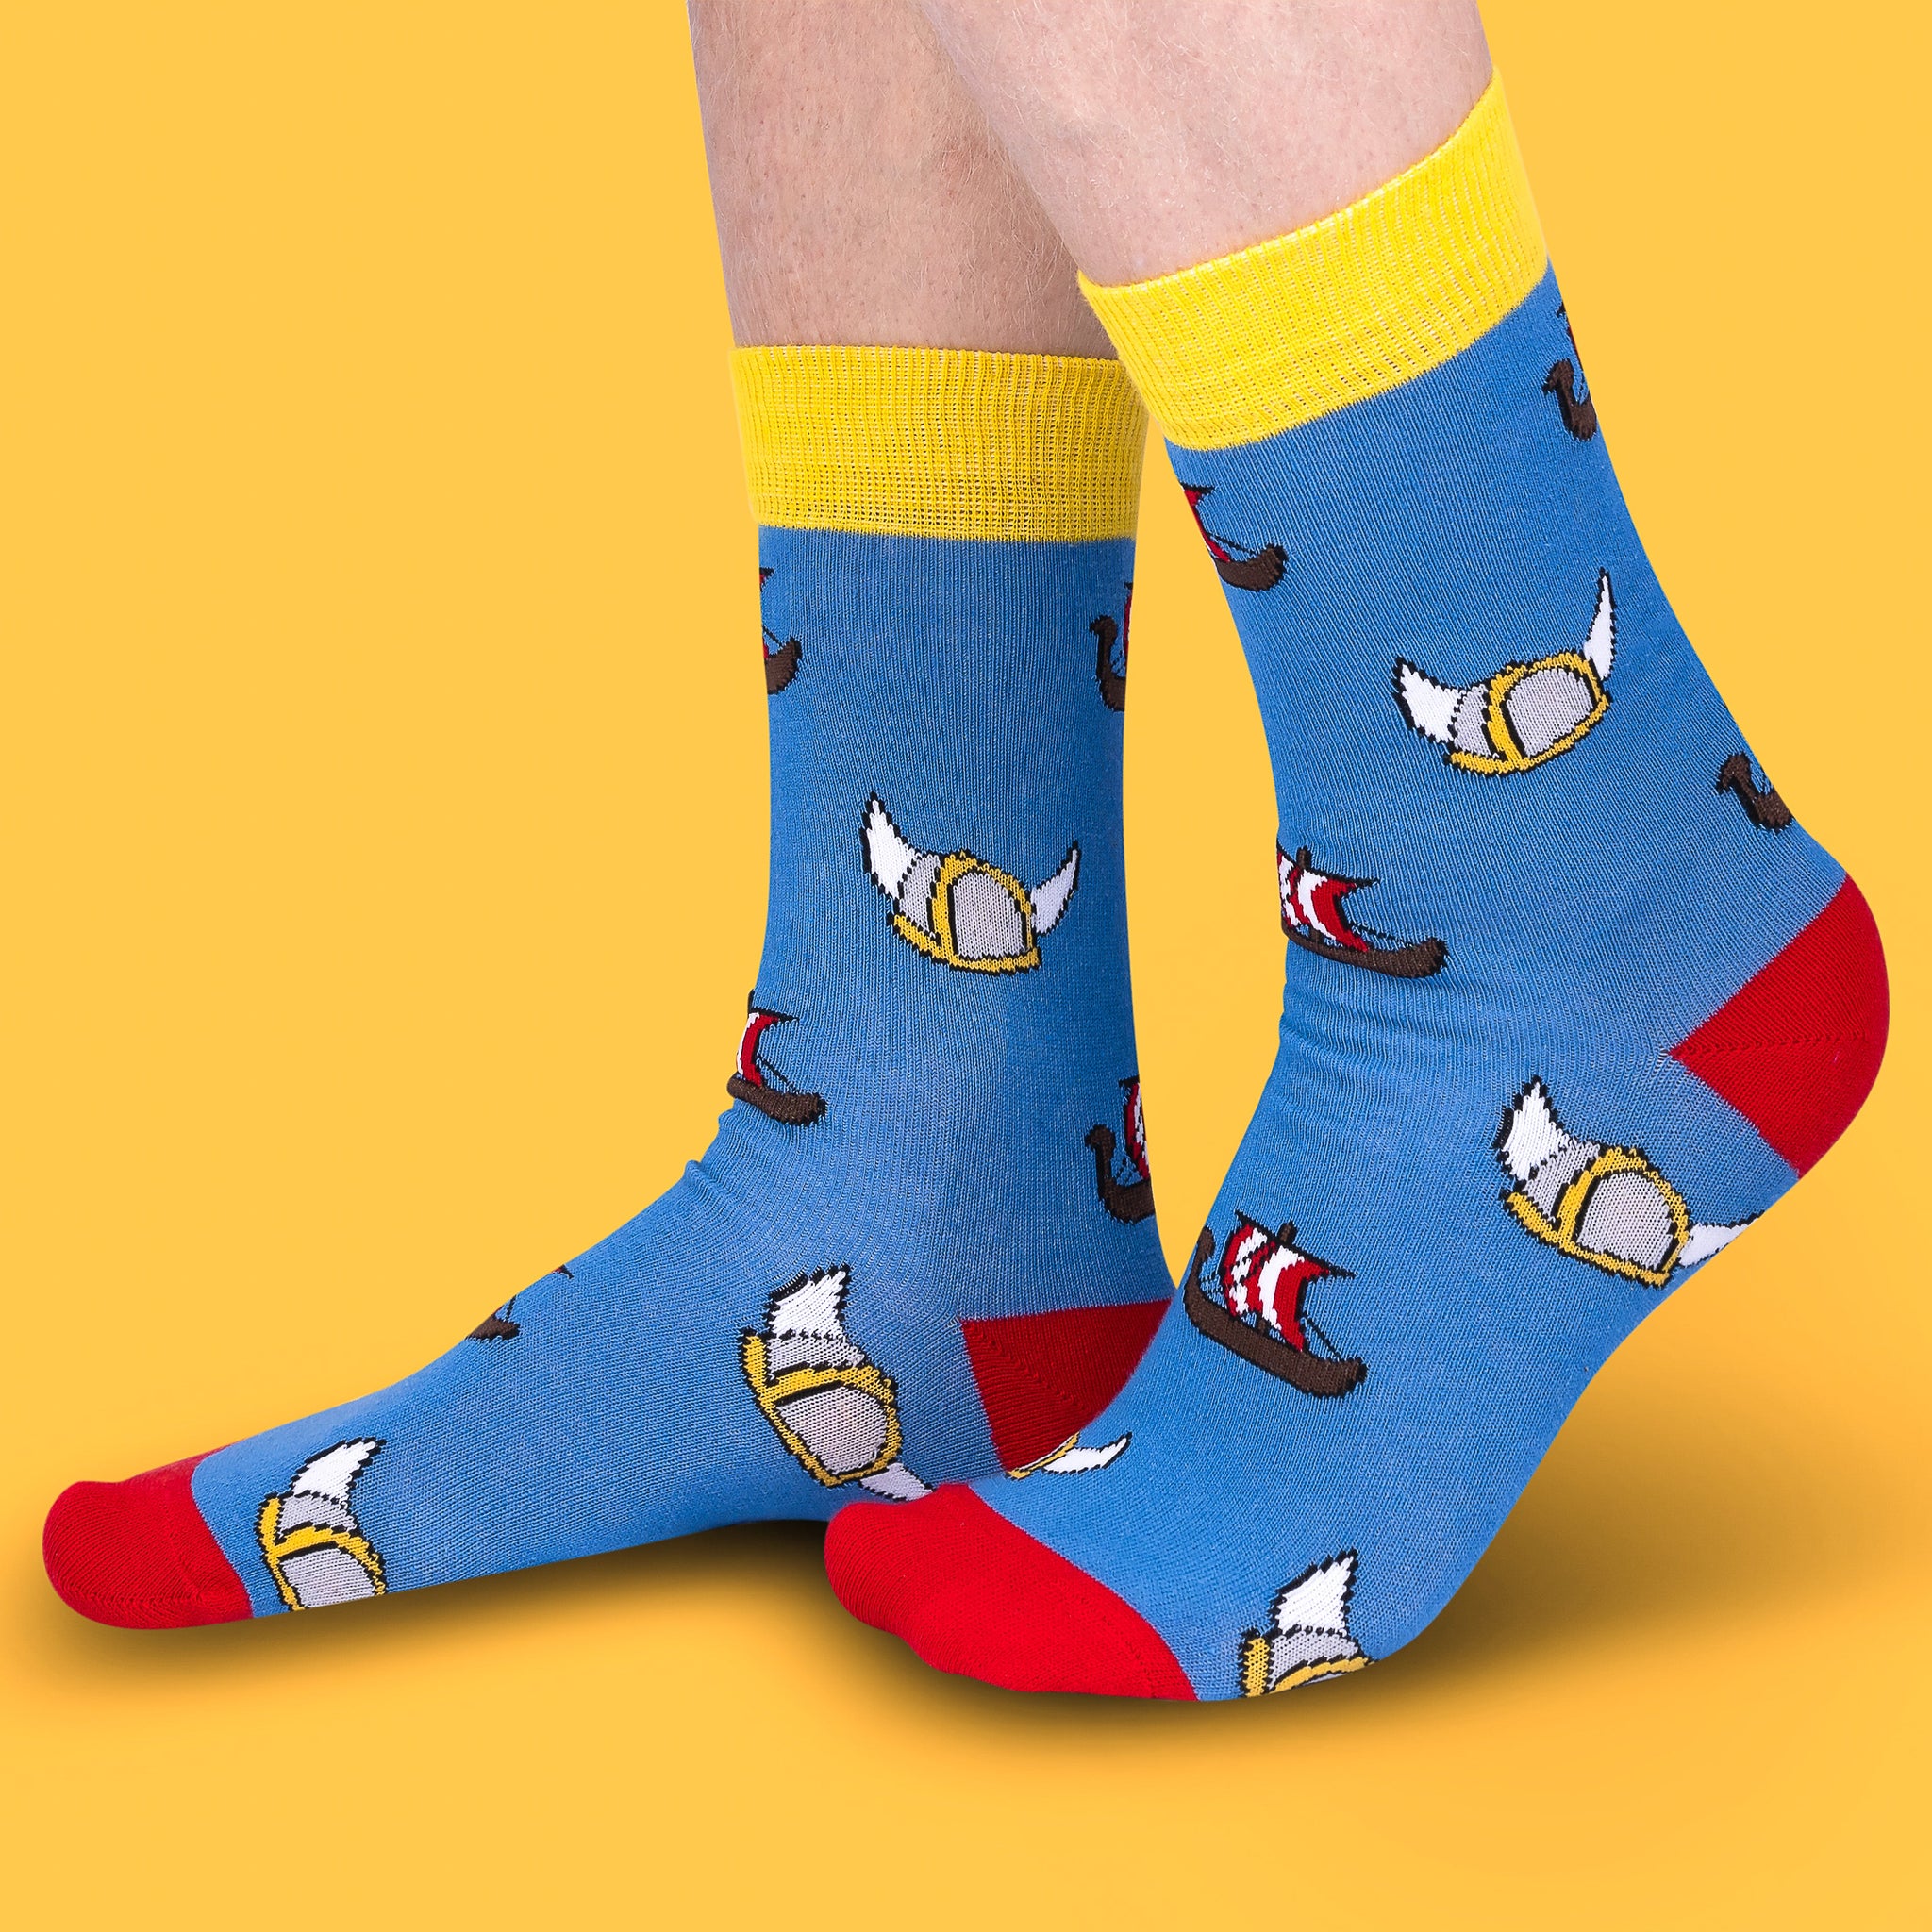 Sweden Socks - Viking Socks